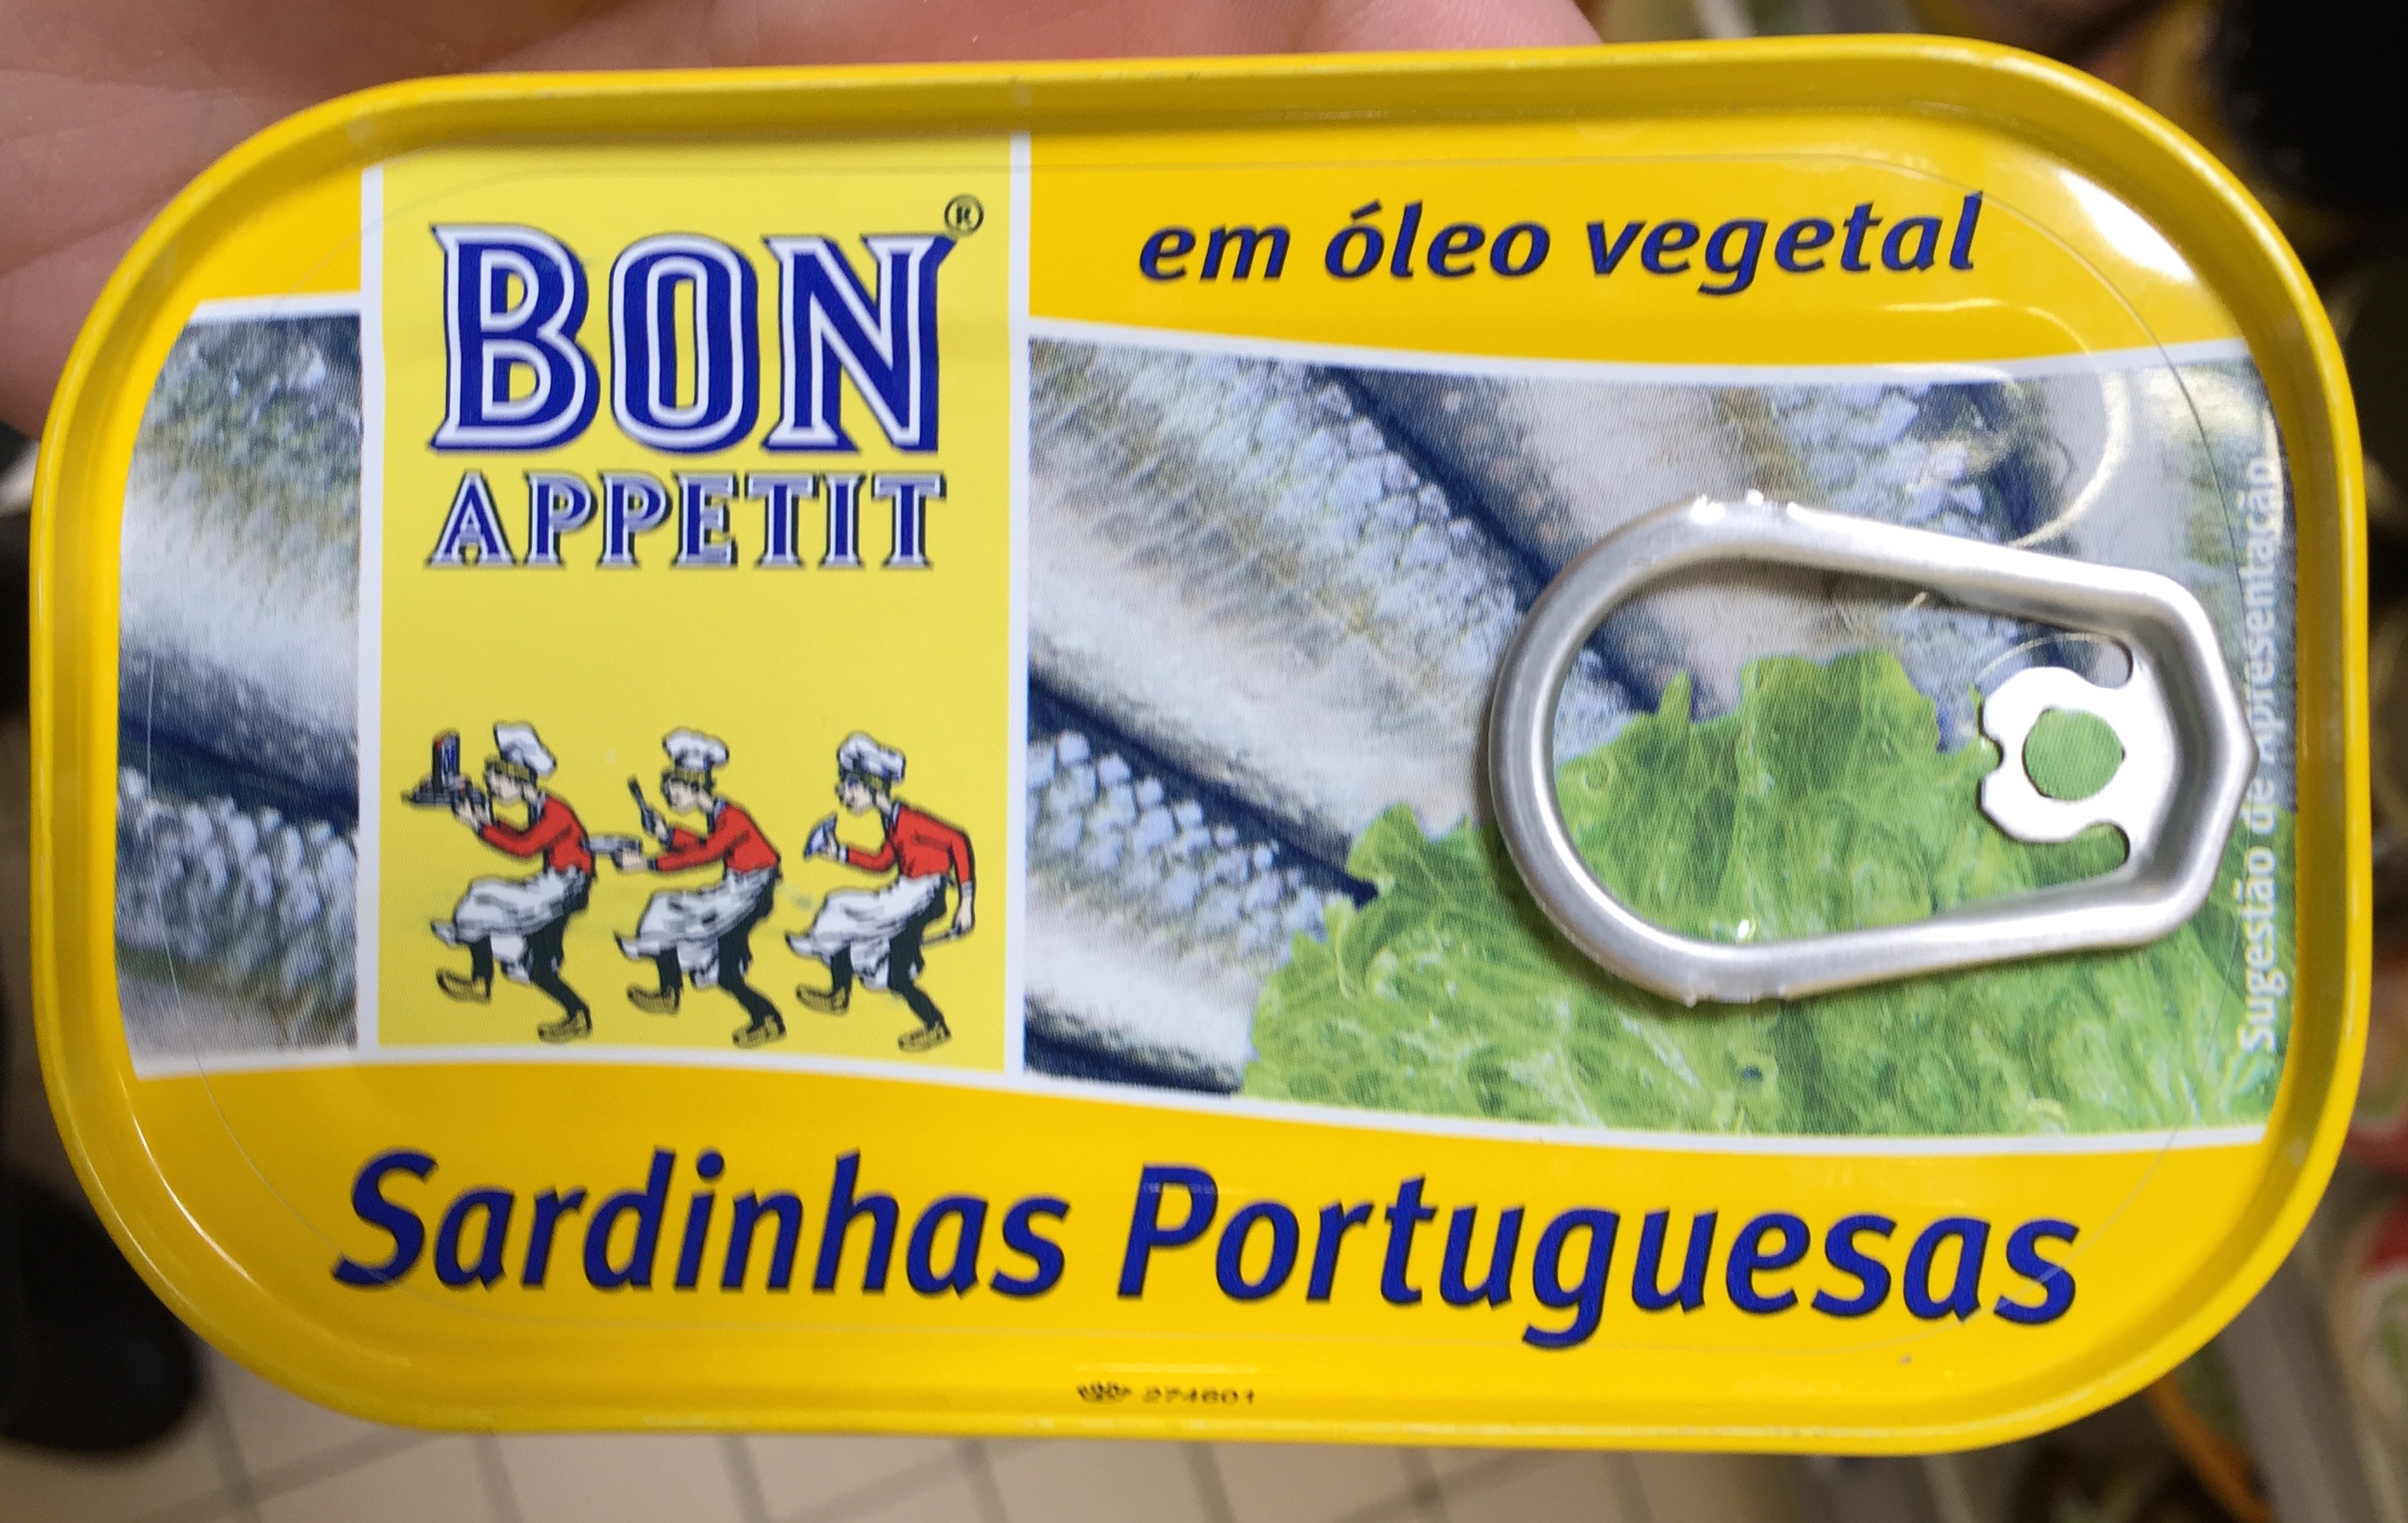 Sardinhas Portuguesas em óleo vegetal - Product - fr